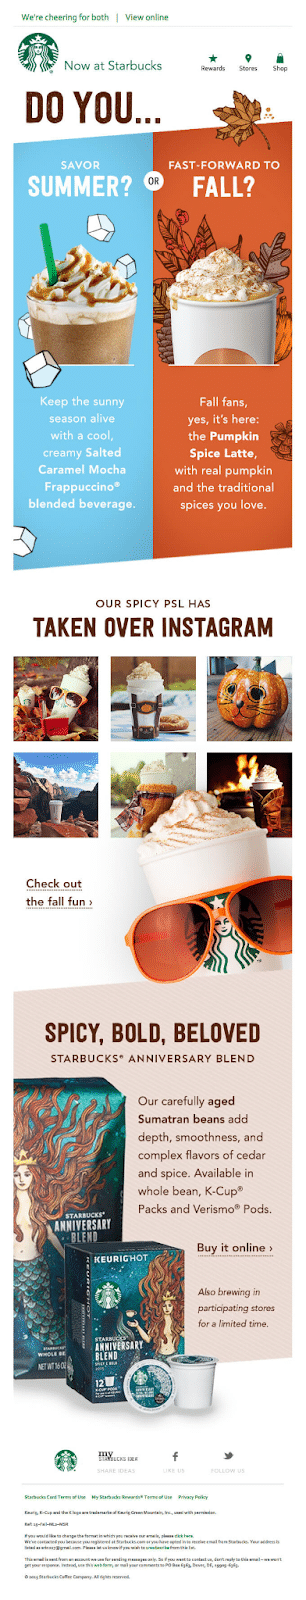 Starbucks Newsletter zur Ankündigung von Herbstprodukten.